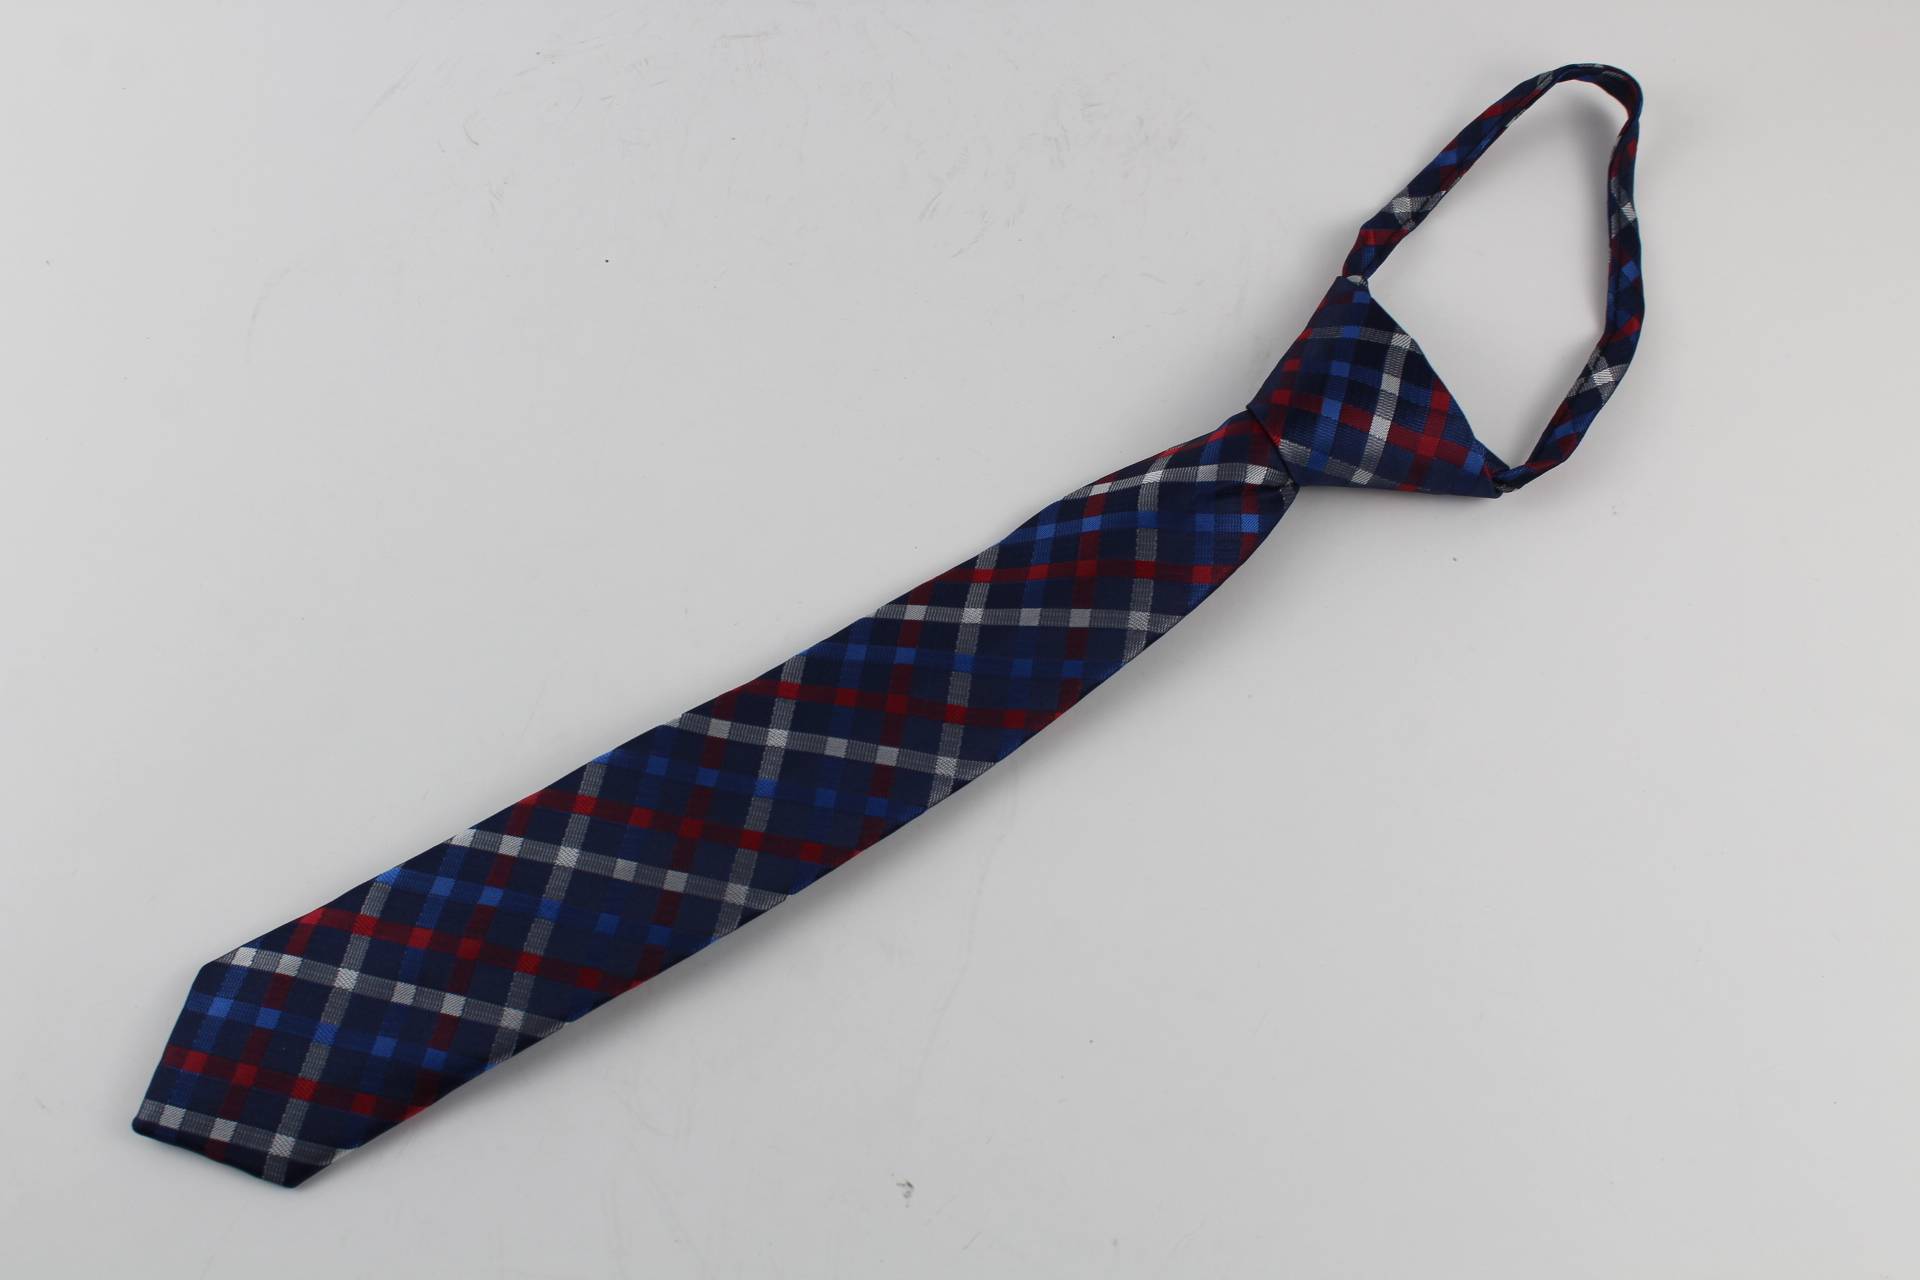 Как выбрать галстук мужчине — правила и советы